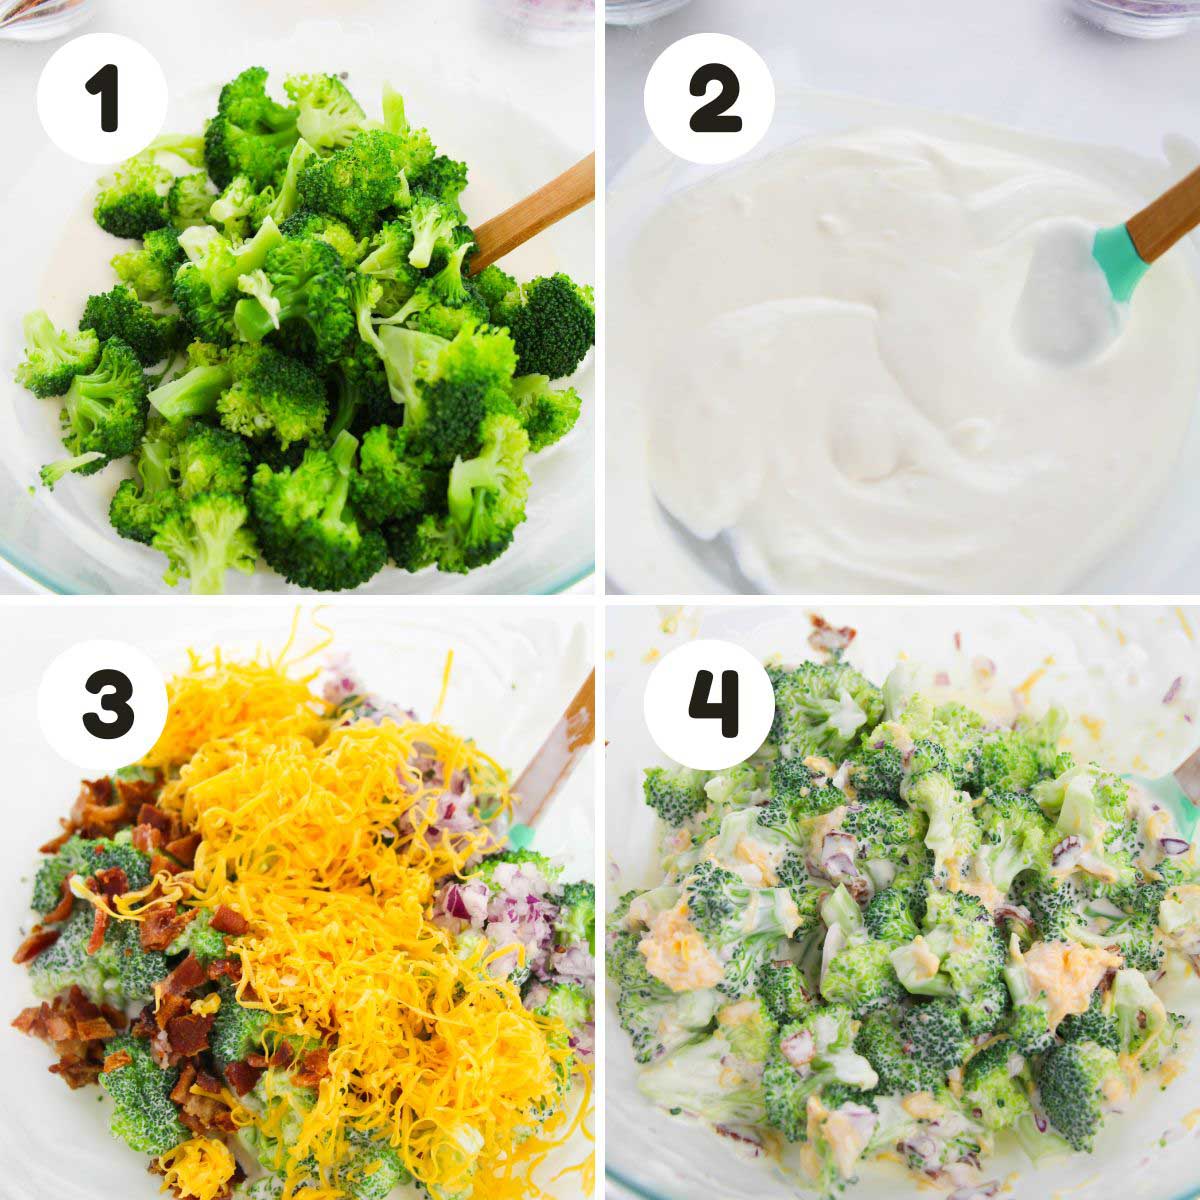 Steps to make the broccoli salad.